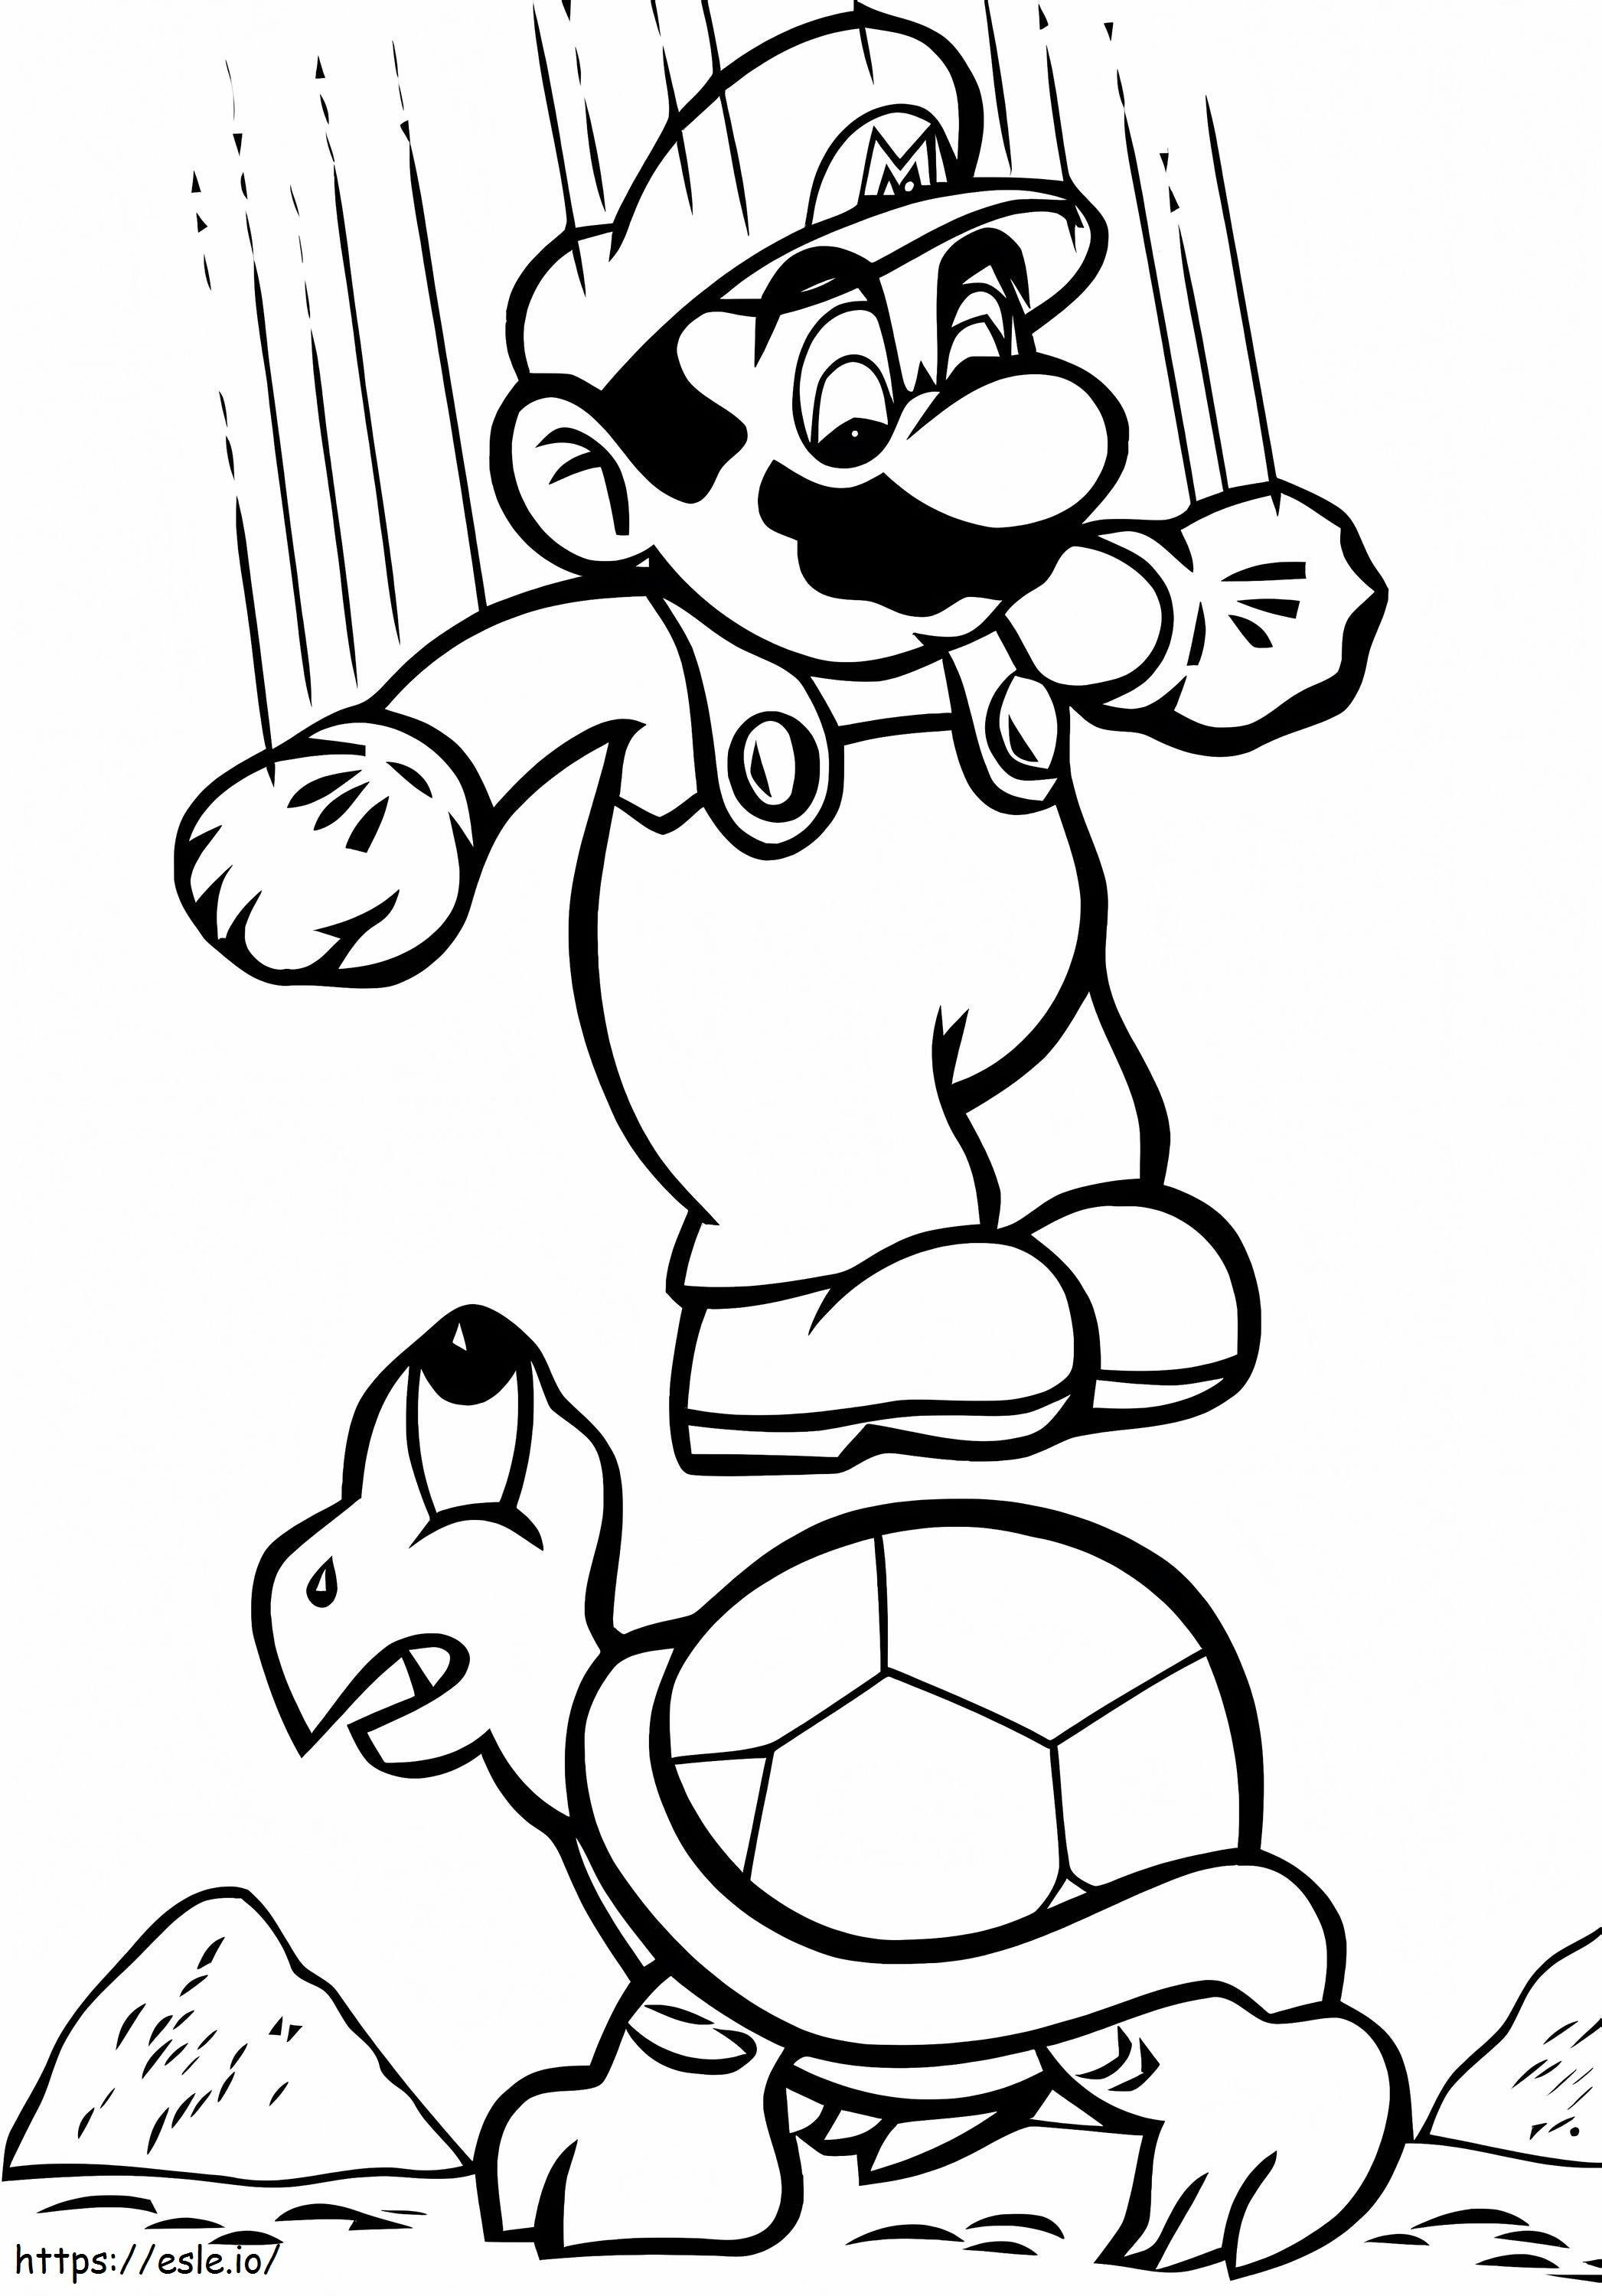 Mario Springt kleurplaat kleurplaat